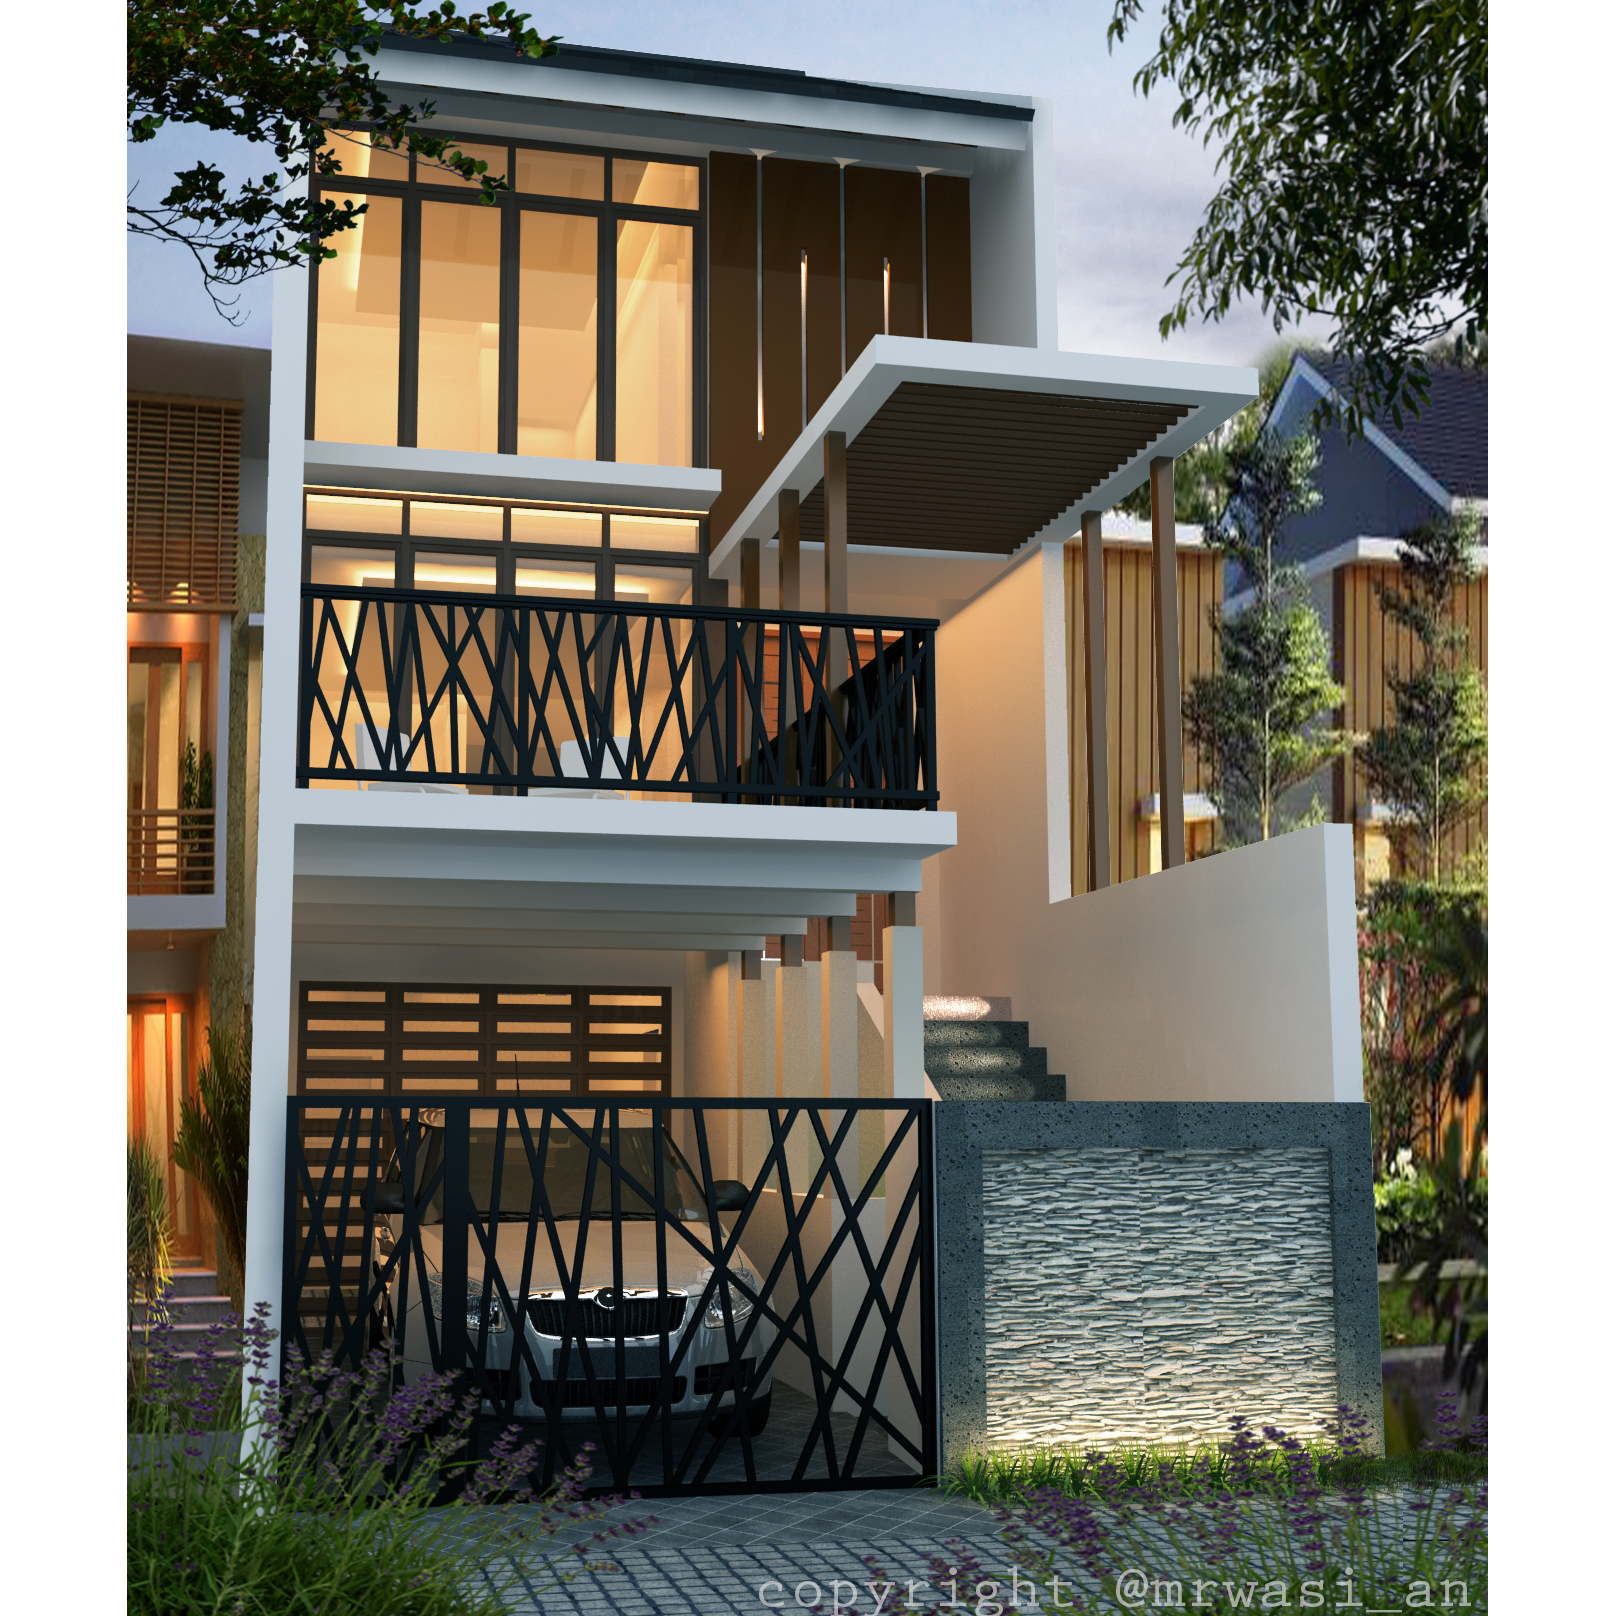 Desain Rumah 5 x 20 M2 Minimalis Tiga Lantai ~ Desain Rumah Online